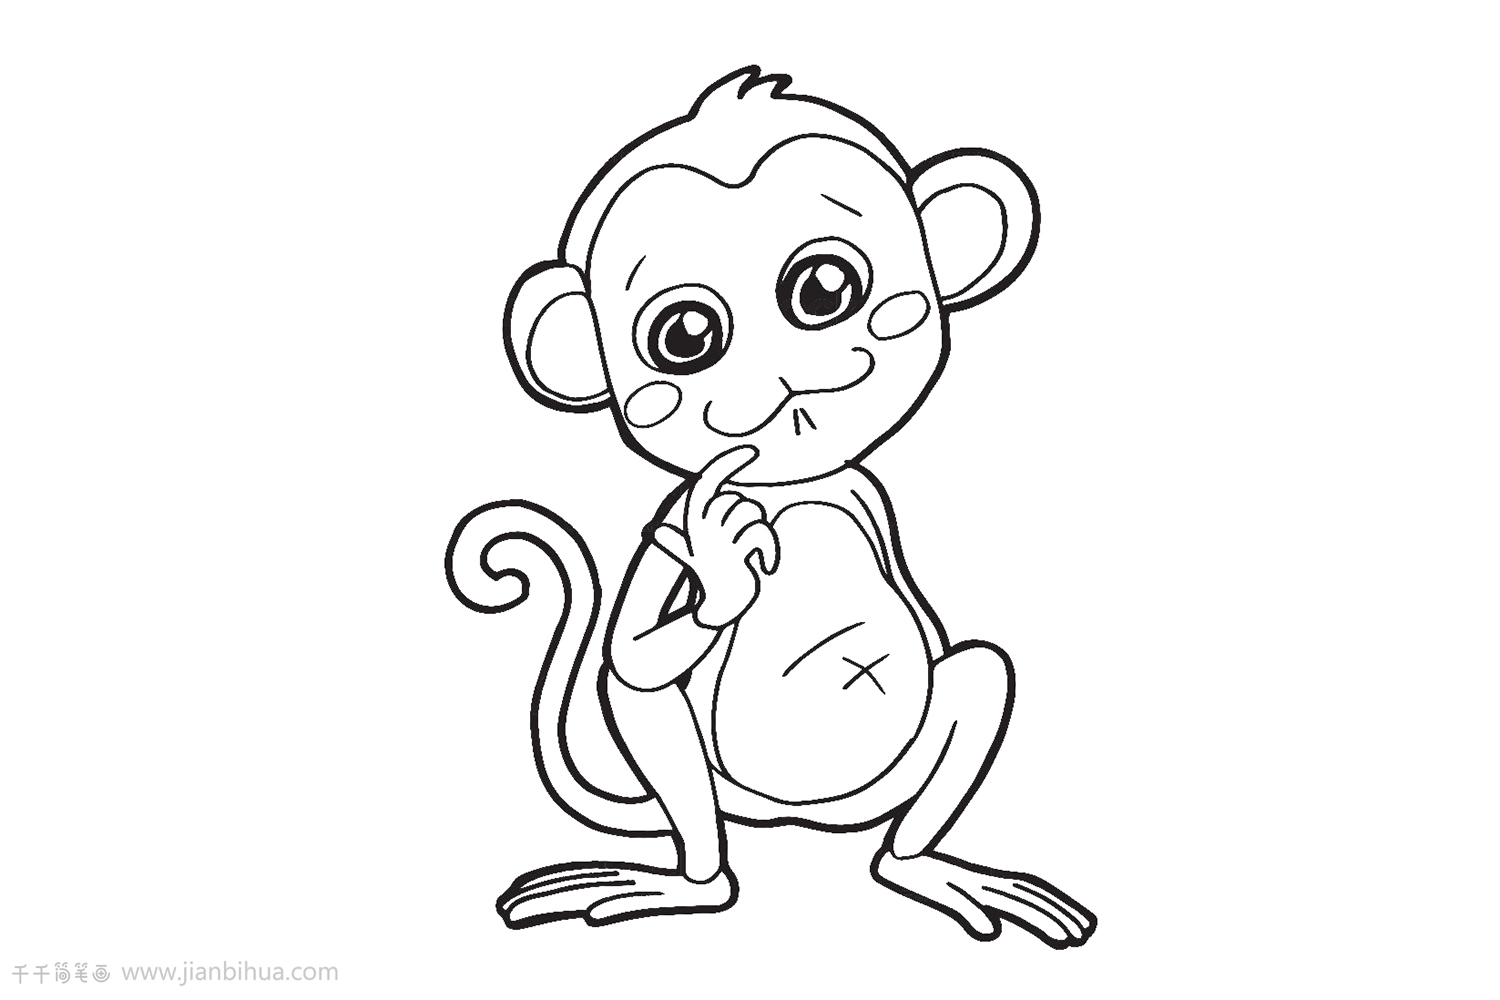 可爱萌猴子简笔画,超萌可爱猴子简笔画 - 简笔画 - 恩尚学塘